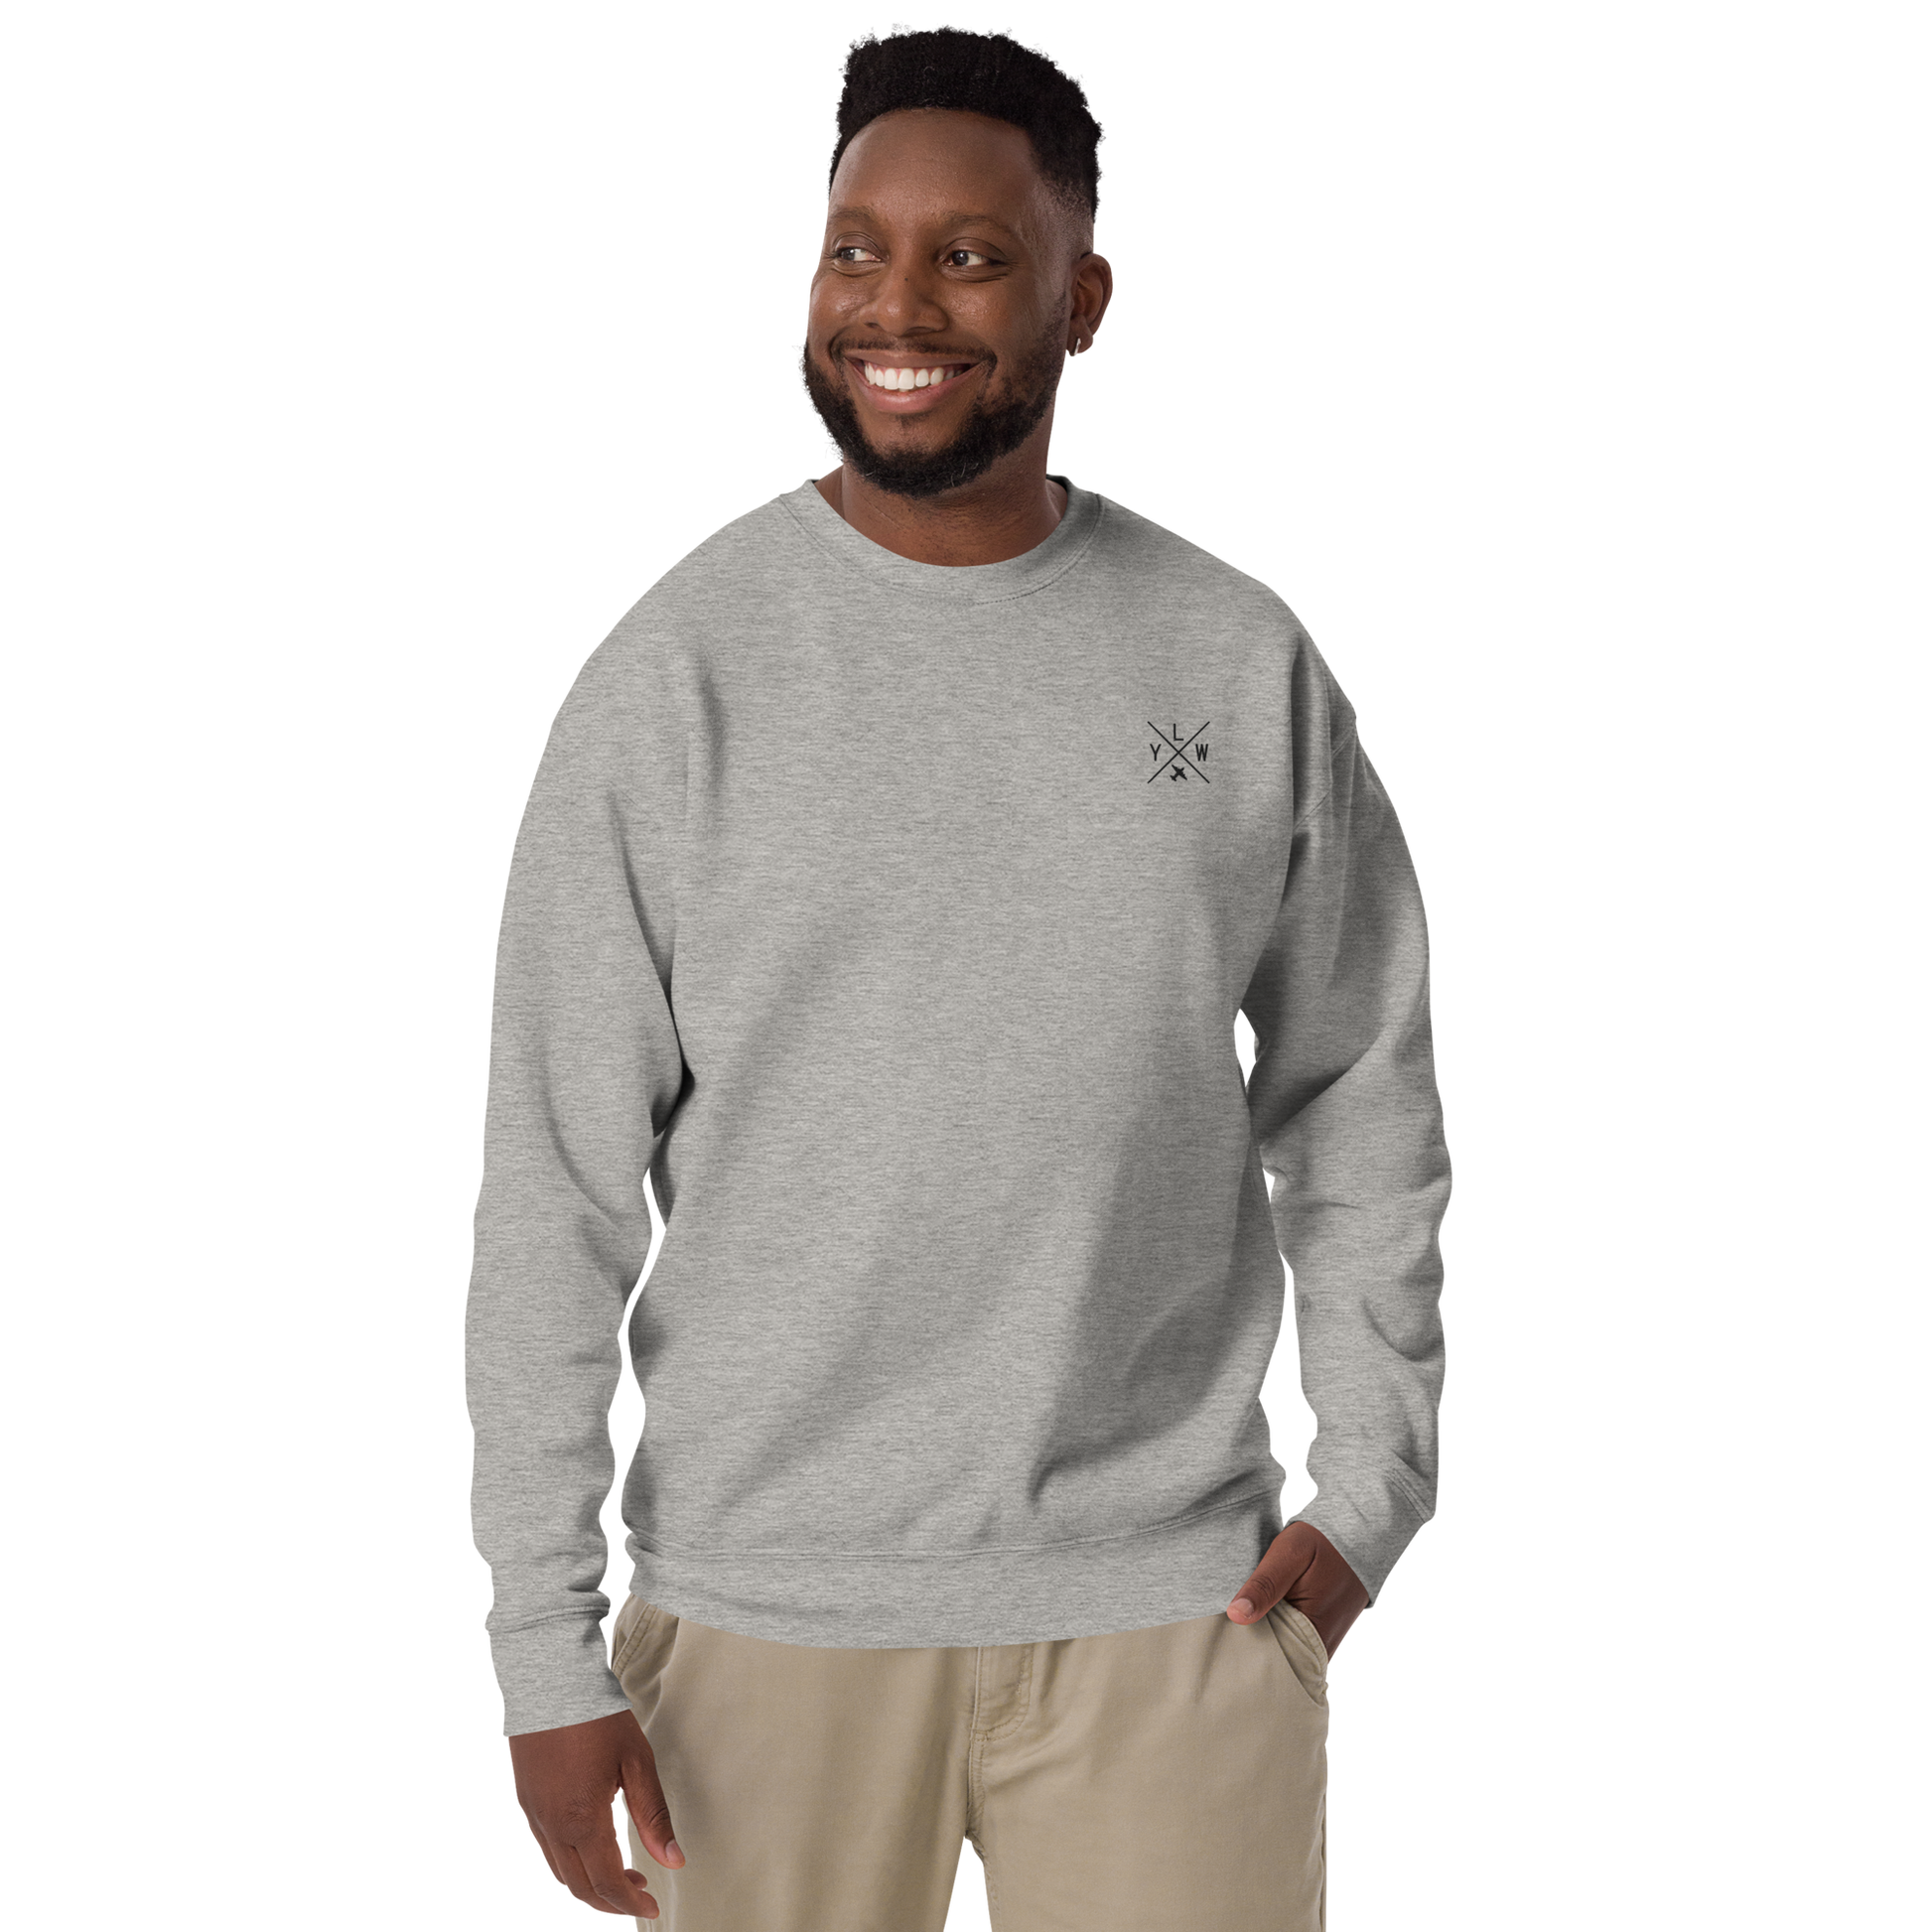 Crossed-X Premium Sweatshirt • YLW Kelowna • YHM Designs - Image 04